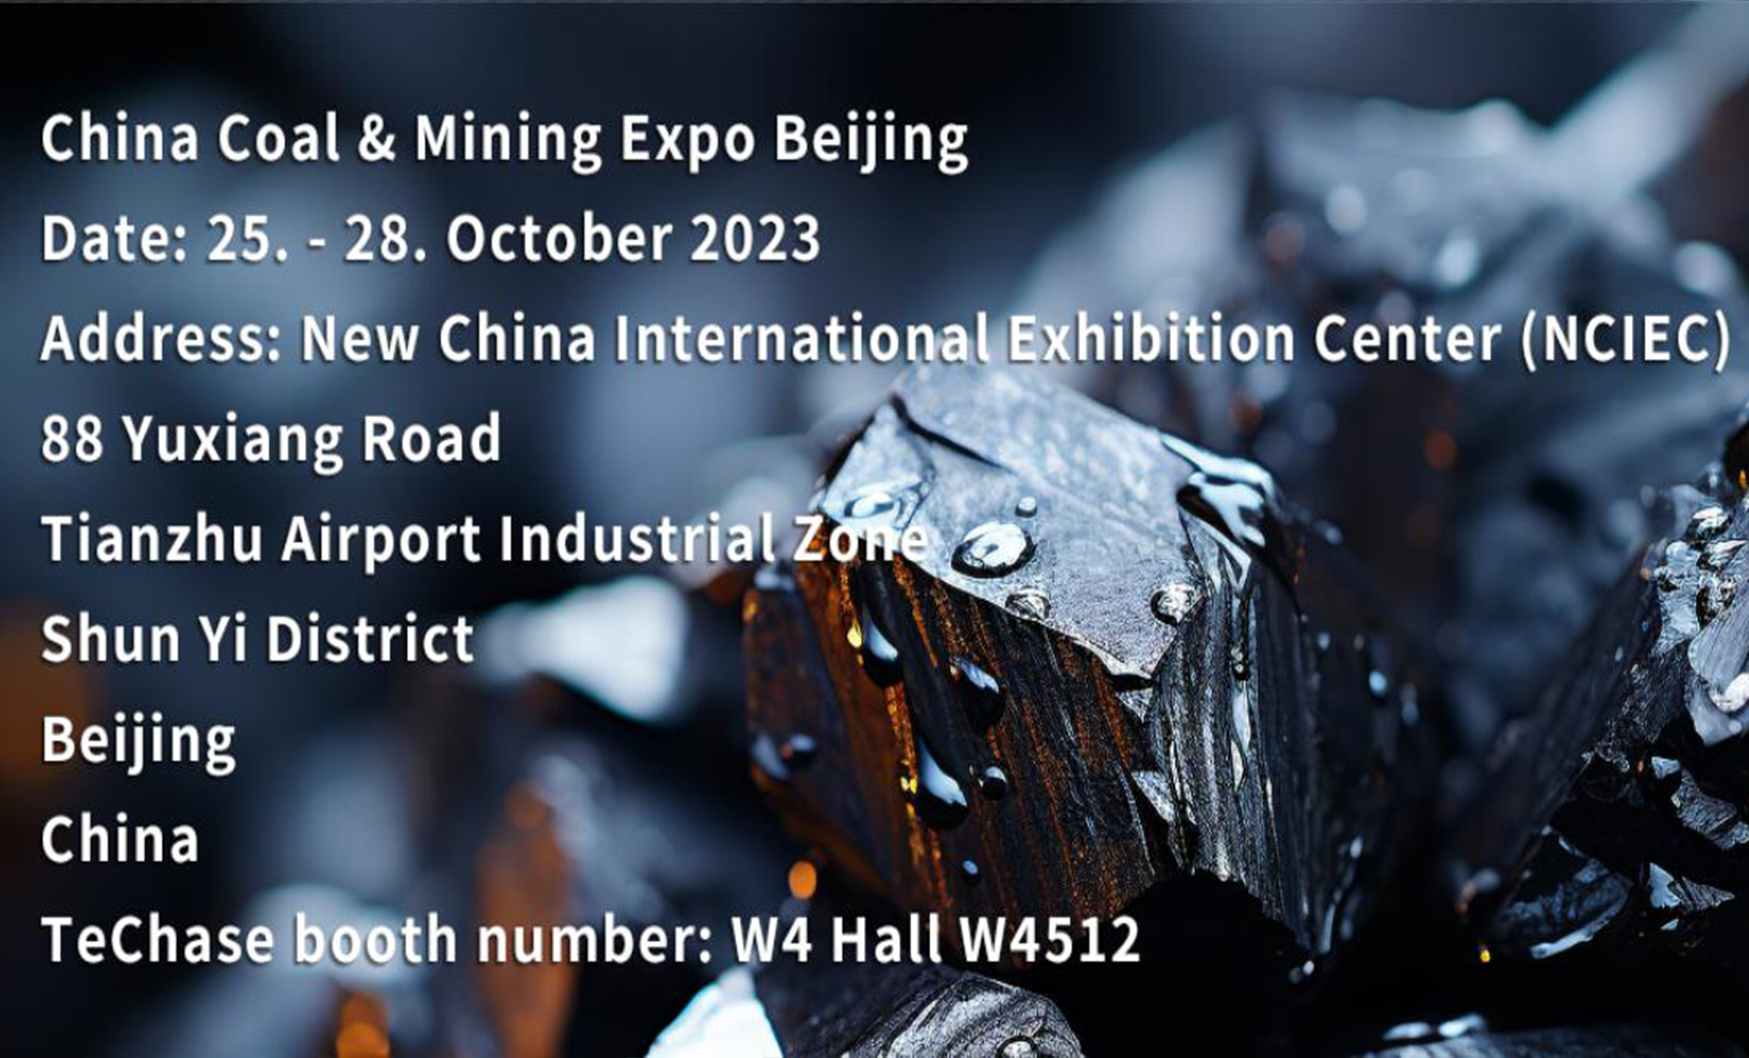 Exhibition Invitation | China Coal & Mining Expo Beijing| 25. - 28. October 2023